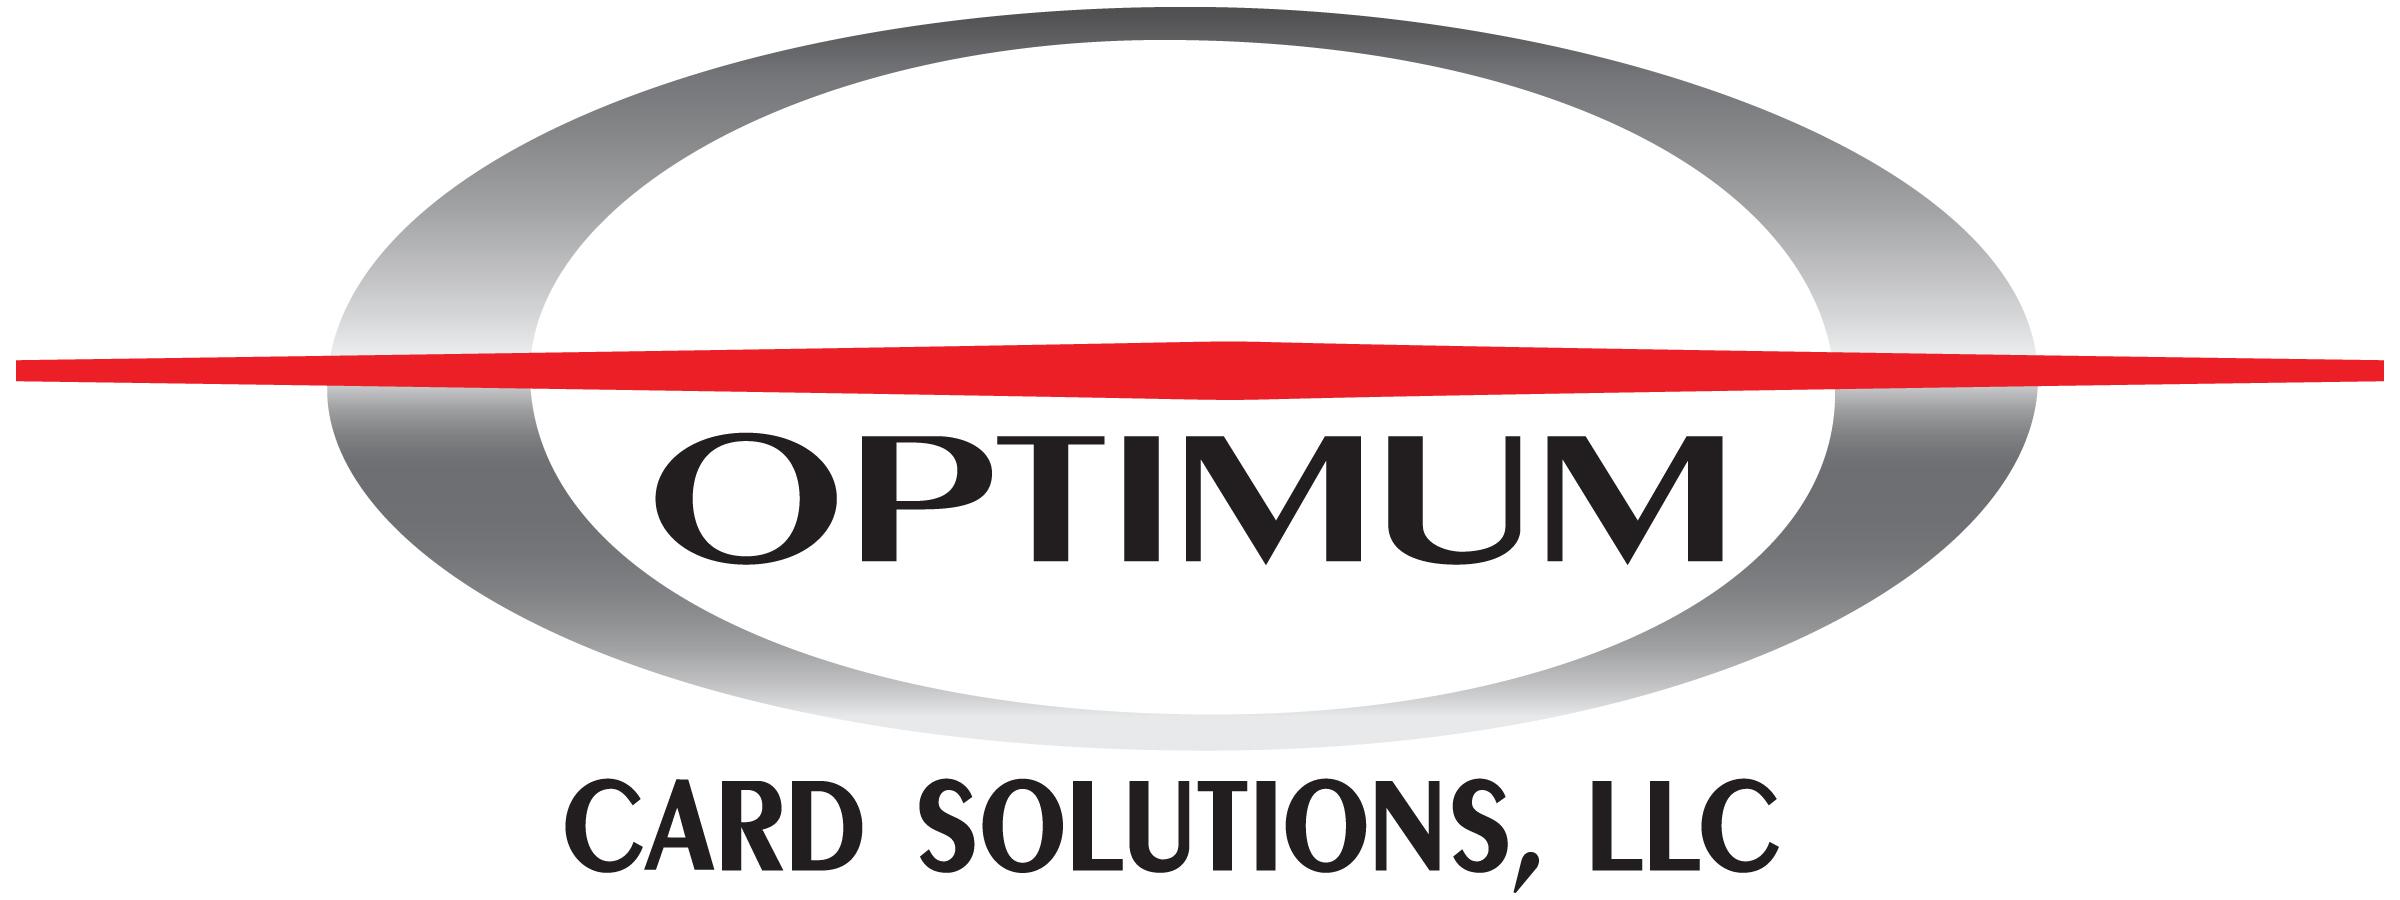 Optimum Logo - Optimum Logo